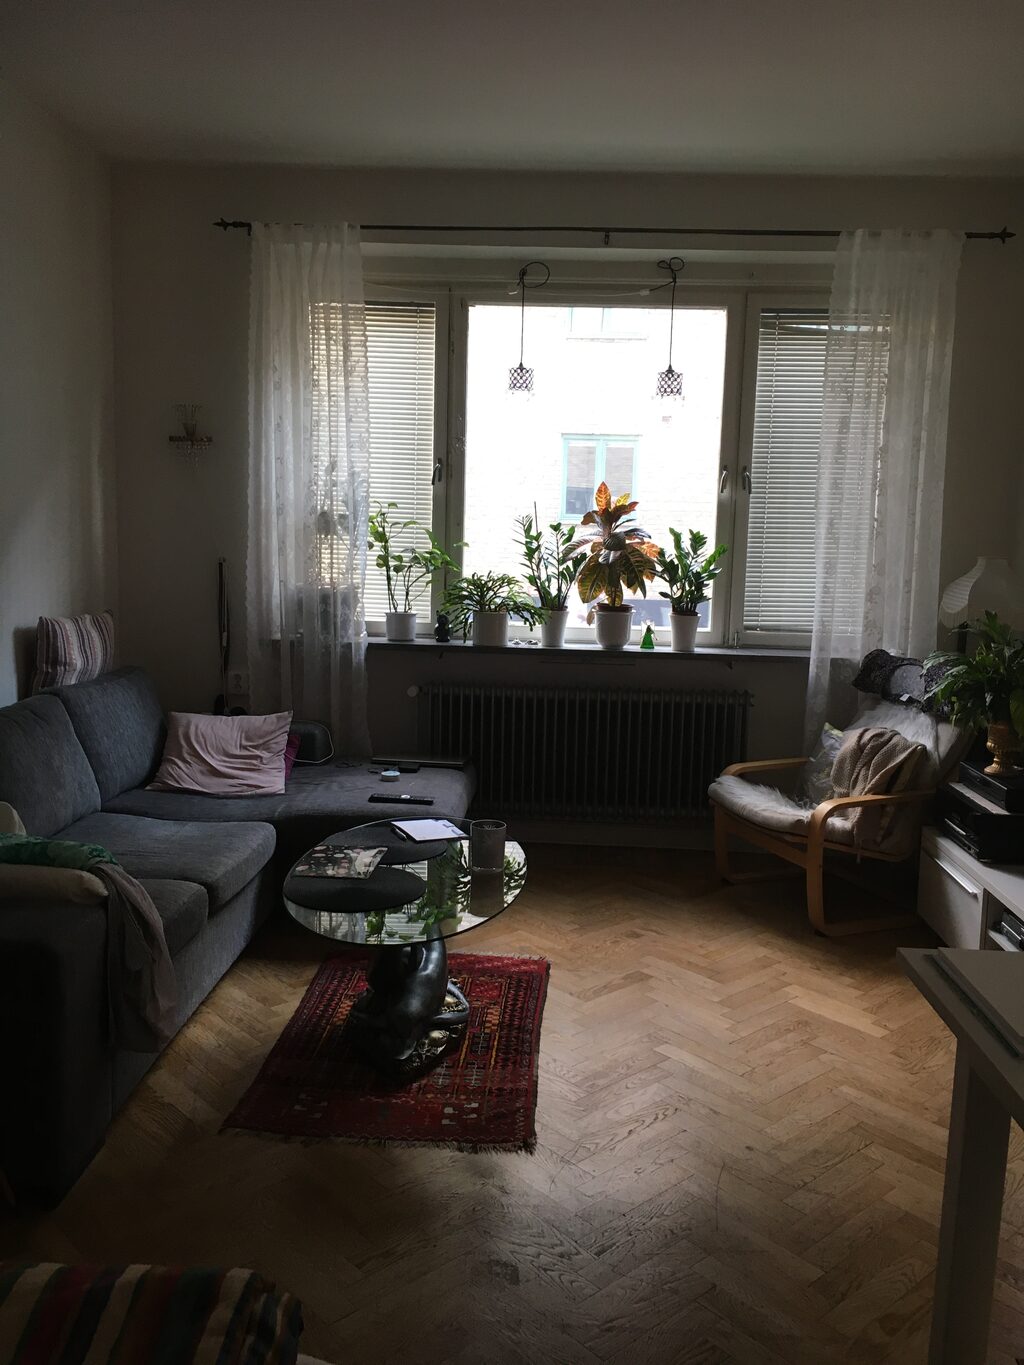 Lägenhetsbyte - Nils Forsbergsgatan 5, 217 54 Malmö